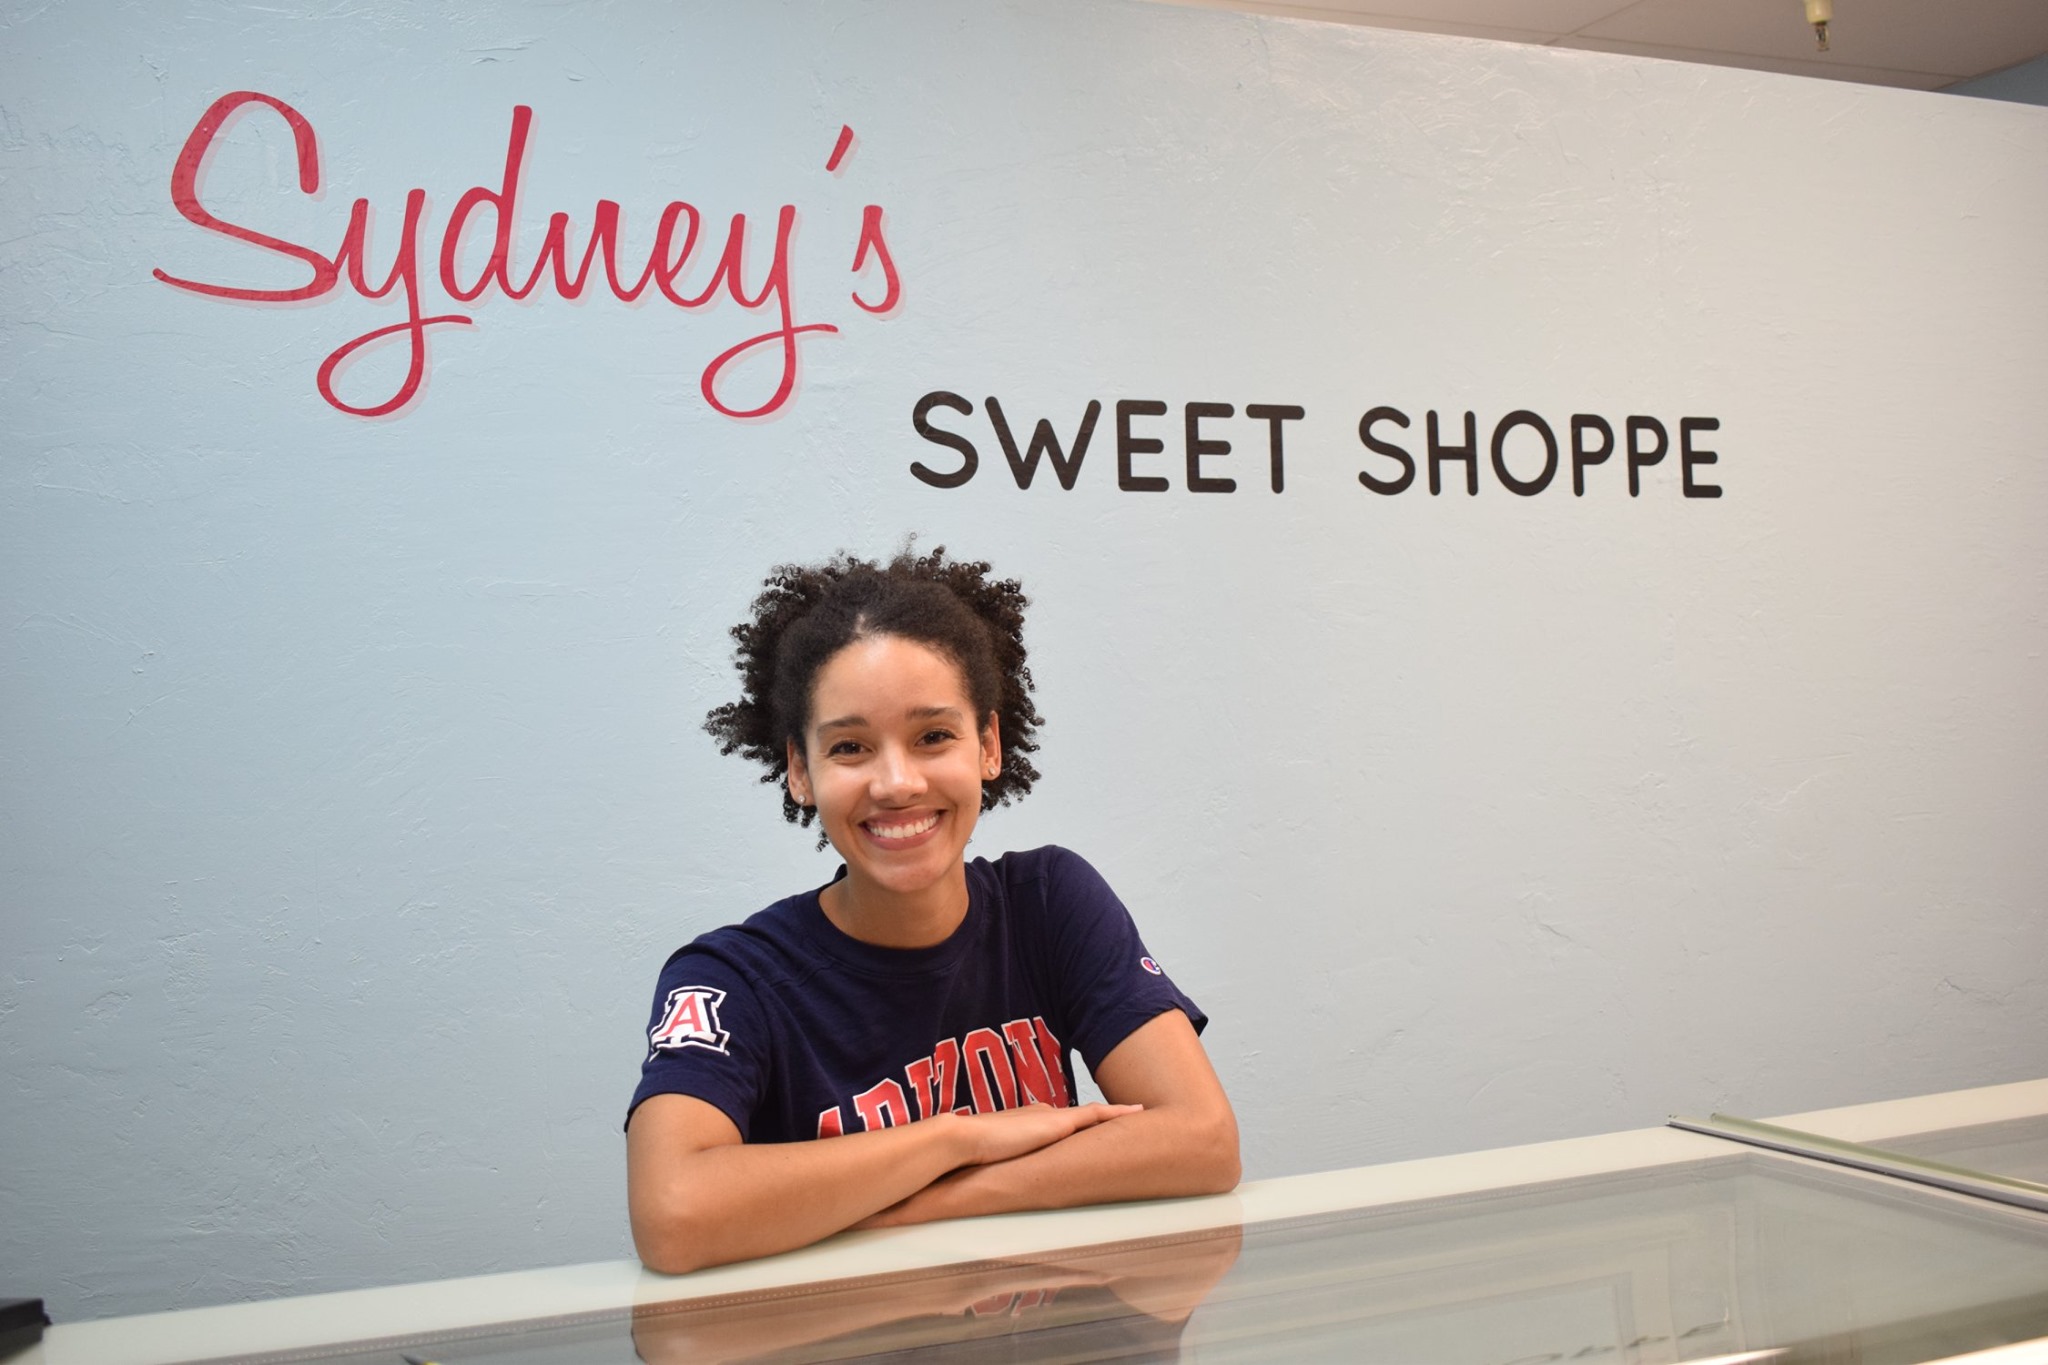 Sydney's Sweet Shoppe